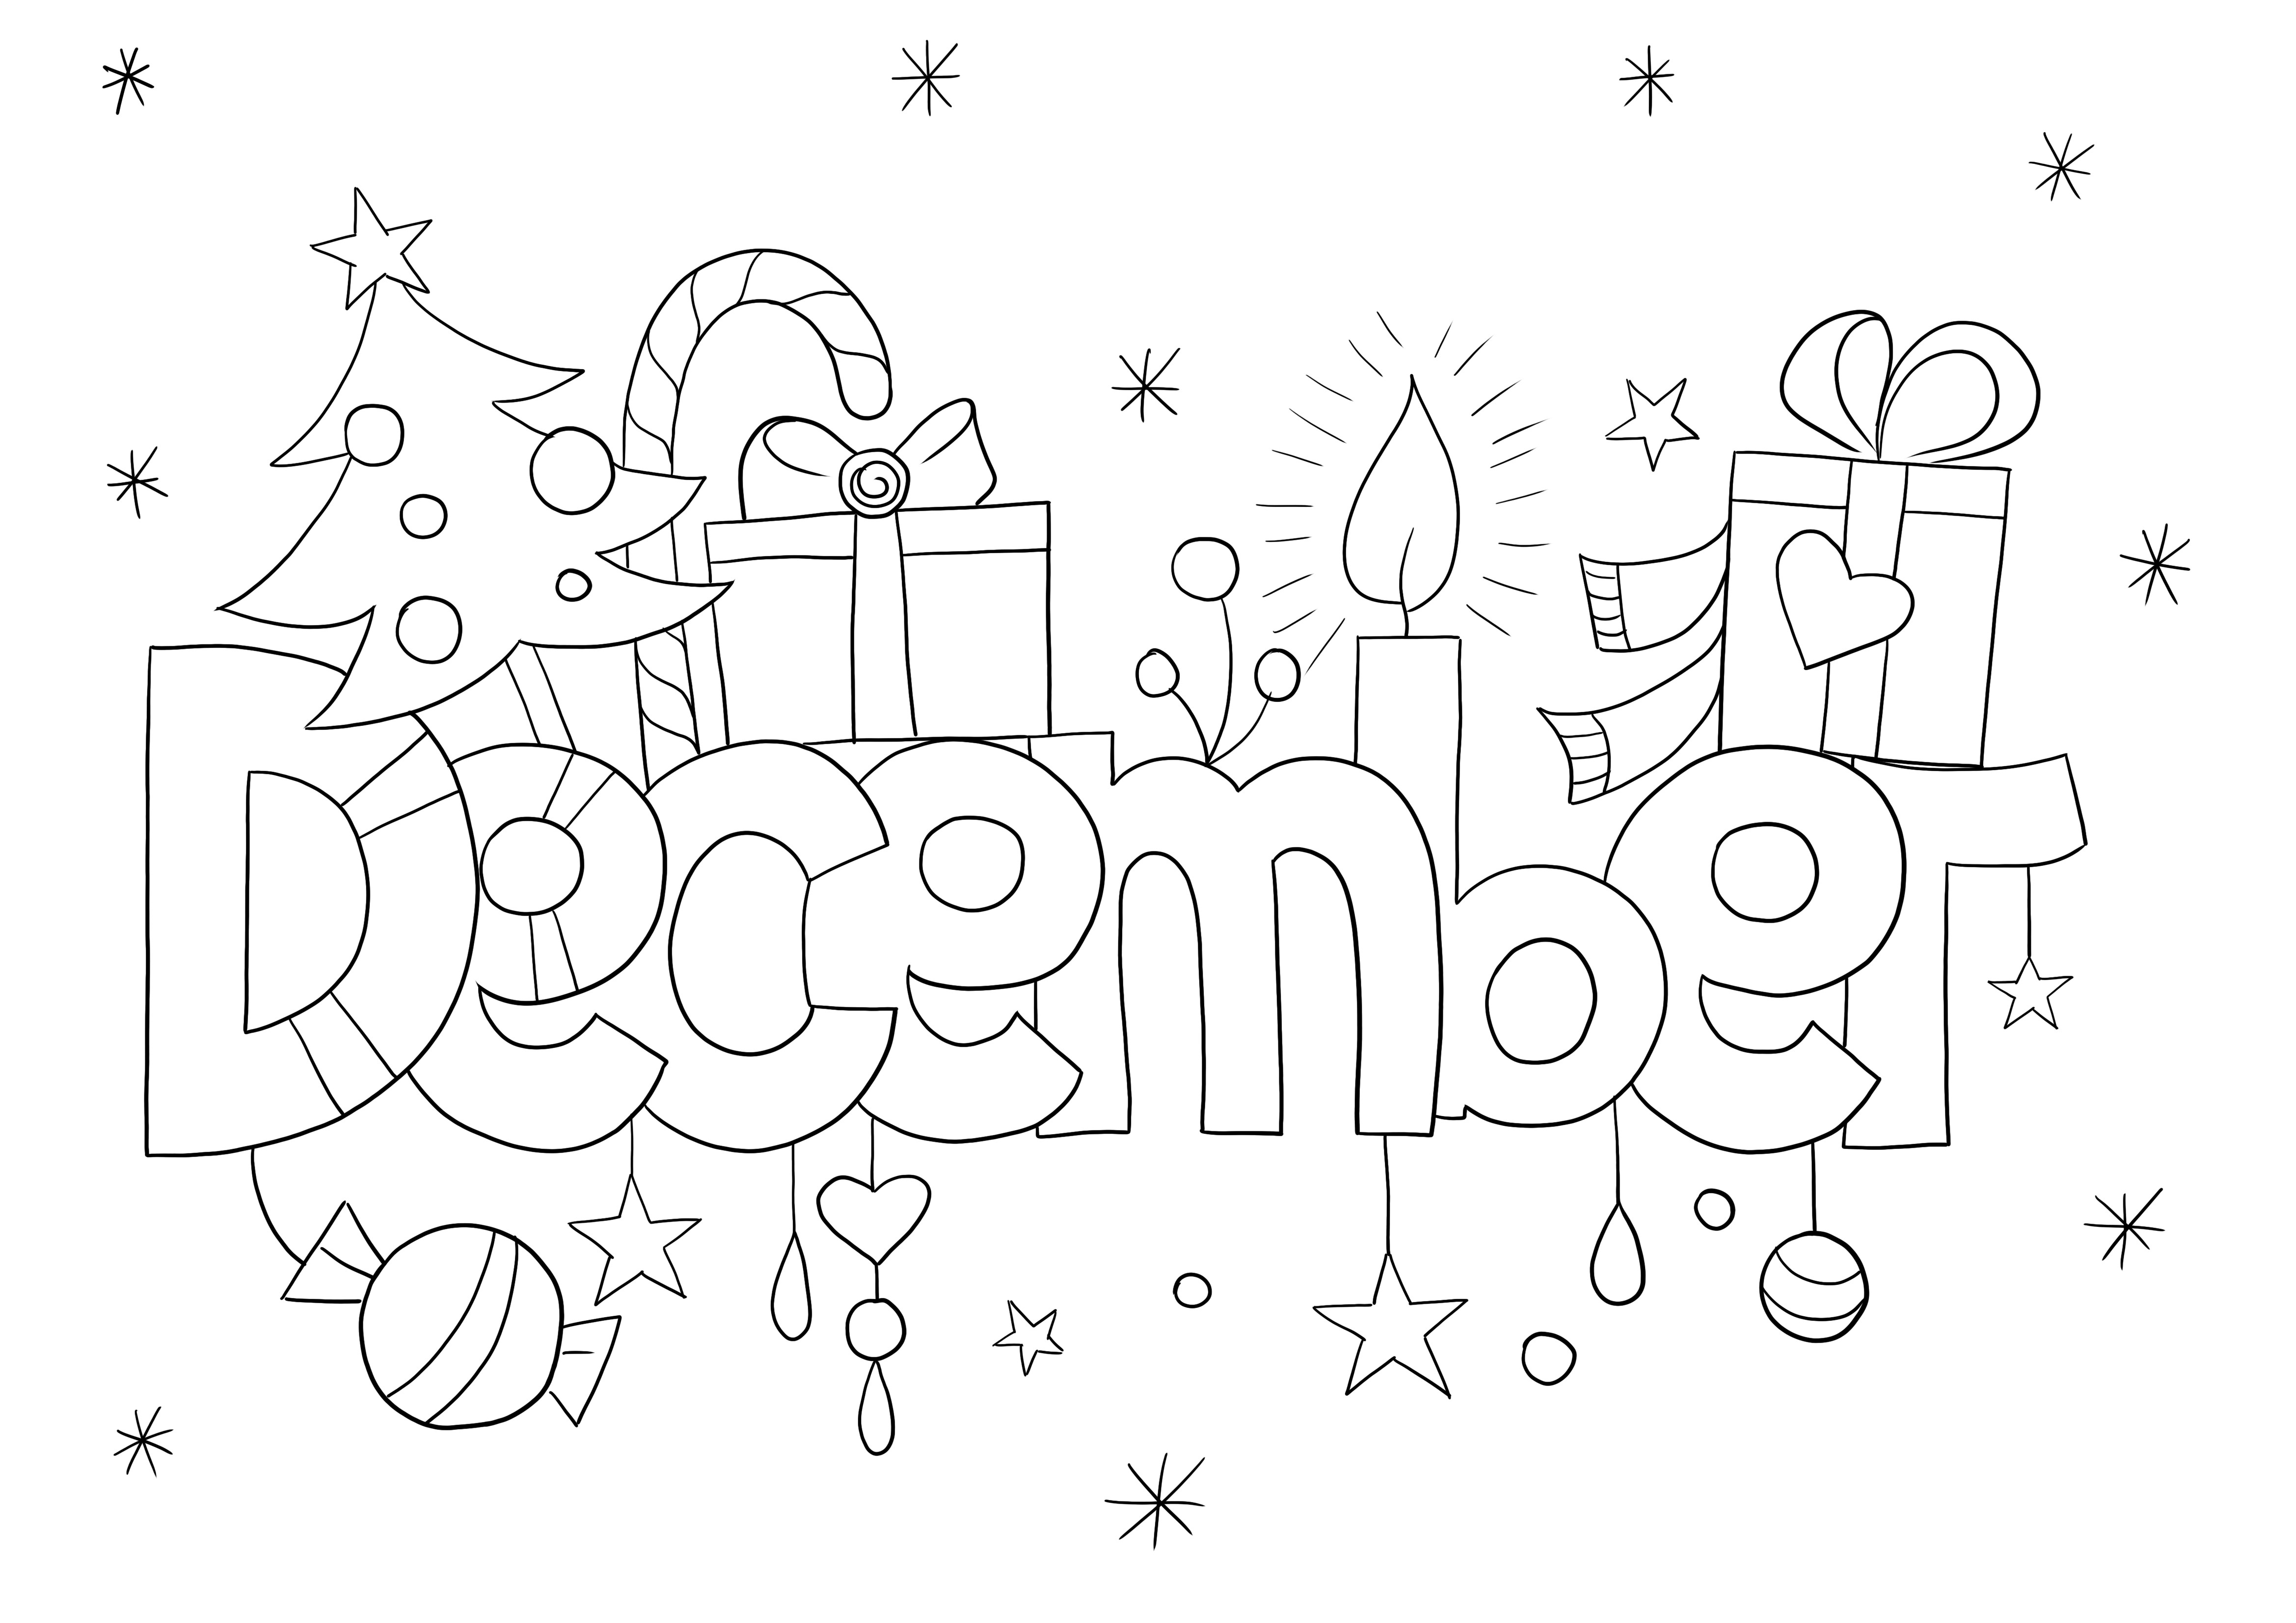 Ücretsiz olarak yazdırılacak ve renklendirilecek Aralık ayı görseli